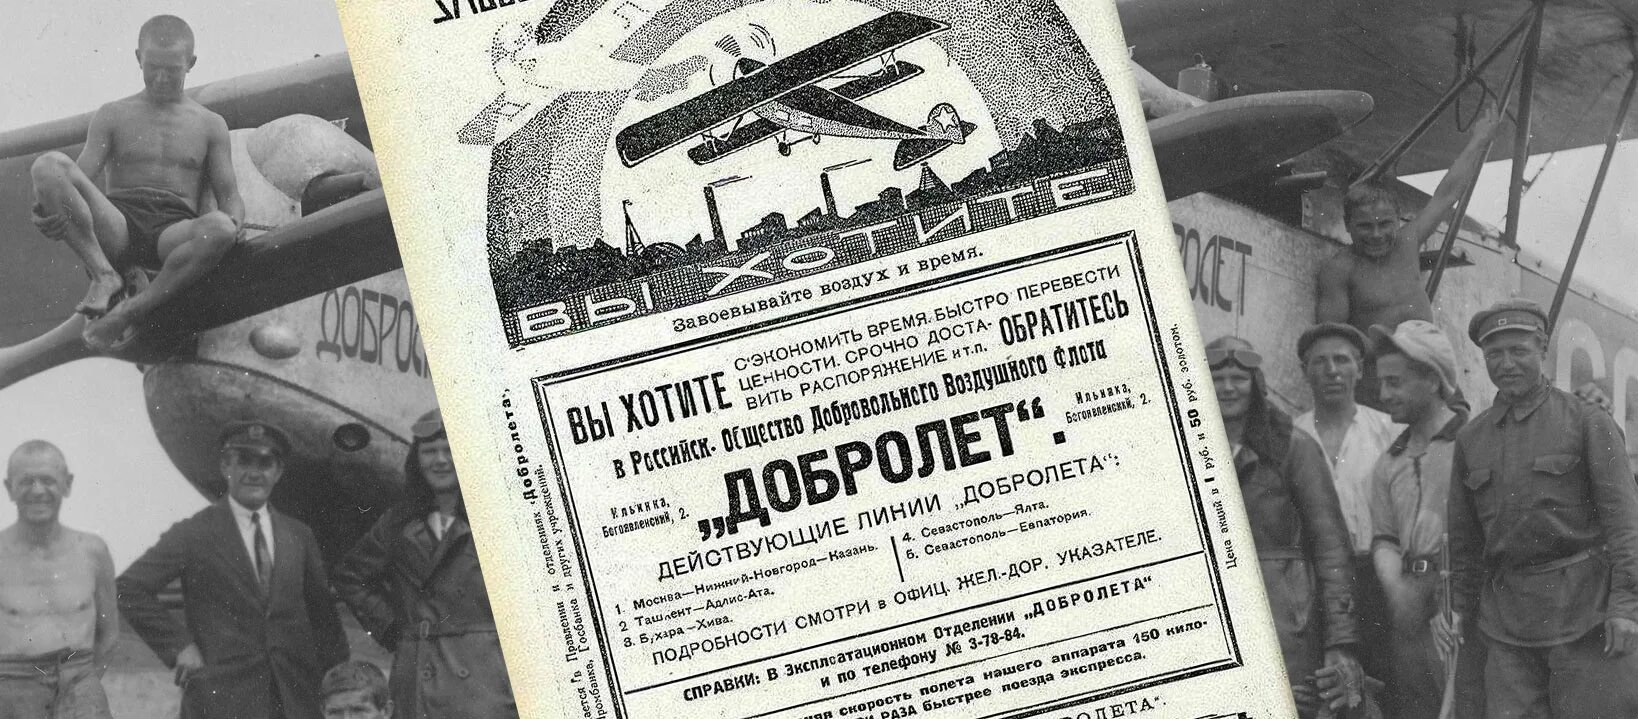 Добролет 1923 год. Российское общество добровольного воздушного флота добролёт. Родченко Добролет 1923. День воздушного флота в 1923 году. Полеты 1 мая